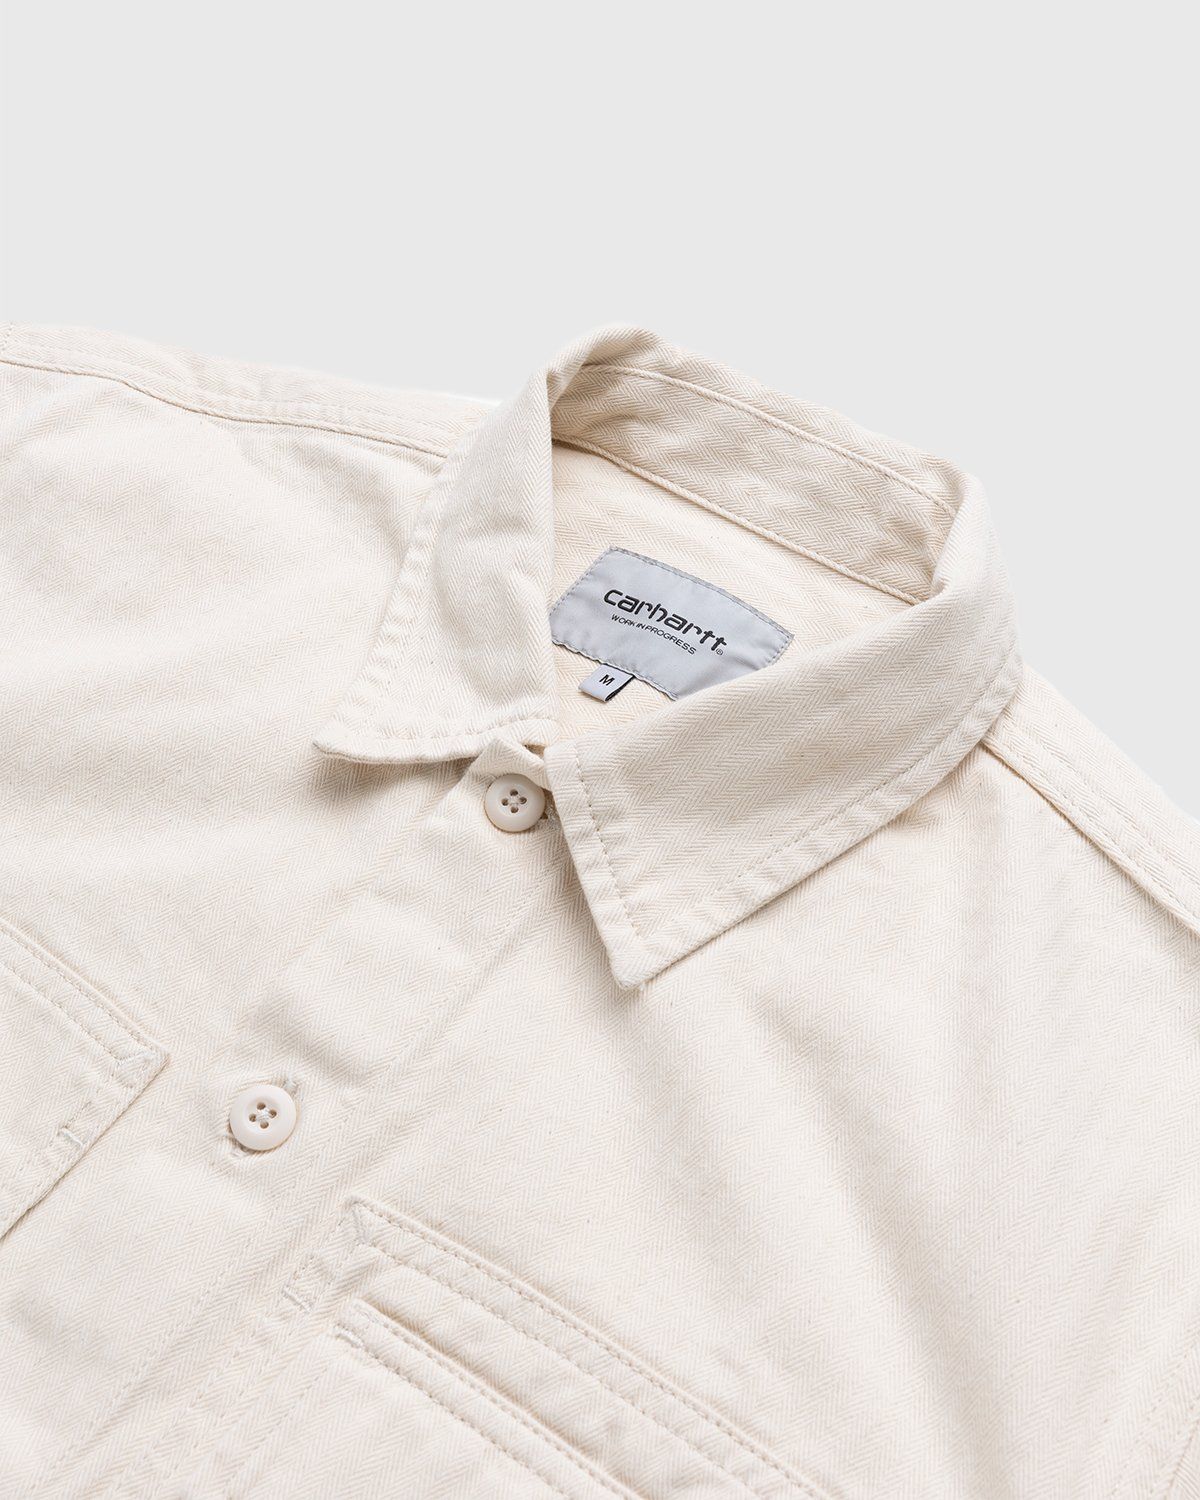 Carhartt WIP – Charter Shirt Natural - Longsleeve Shirts - Beige - Image 3